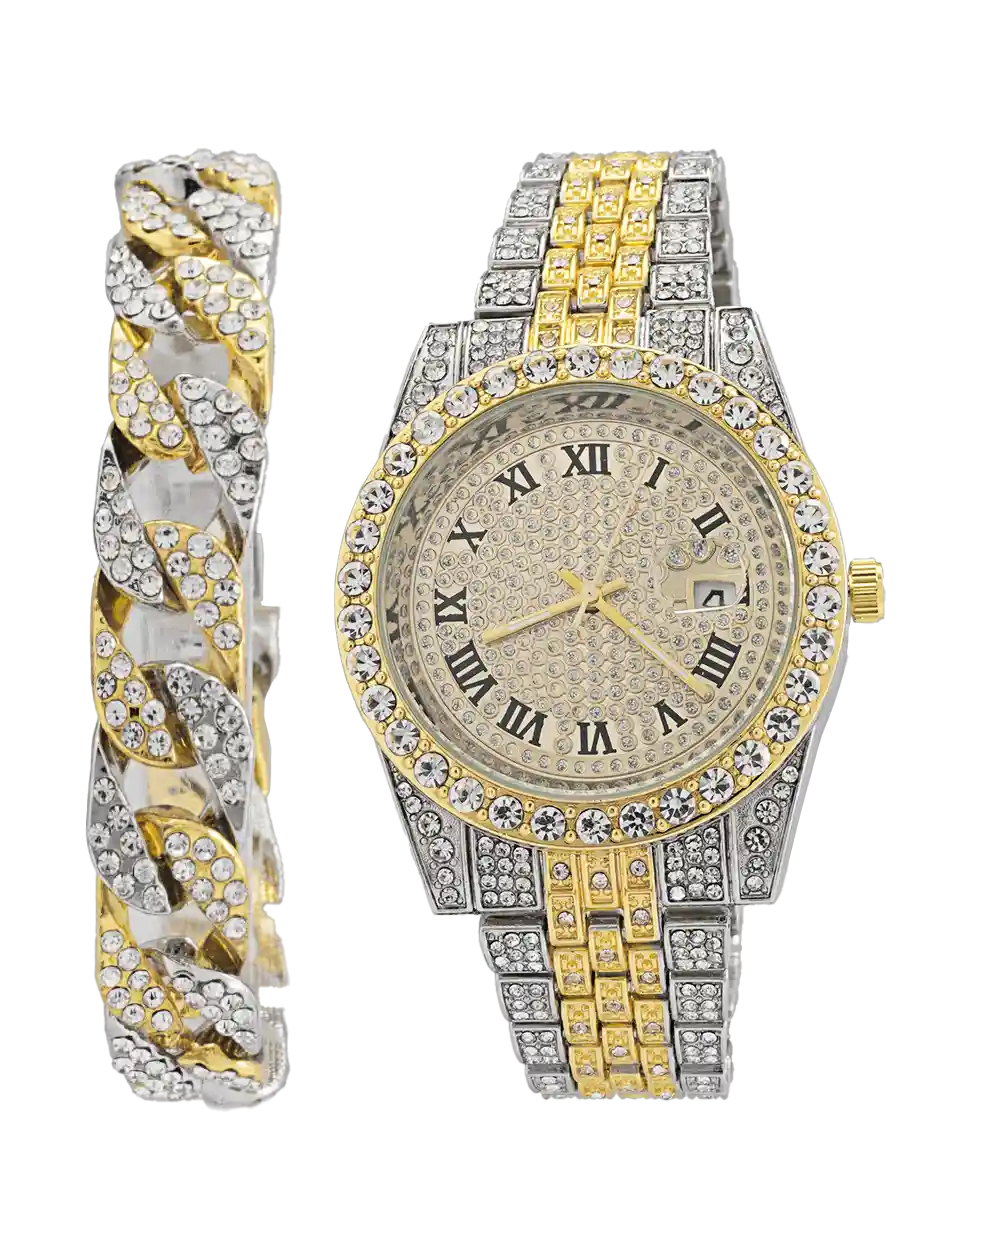 خرید ست ساعت مچی و دستبند مردانه فول نگین رولکس ROLEX مدل 1805 نقره ای طلایی با دستبند فول نگین قیمت 650 هزارتومان به همراه ارسال رایگان و جعبه